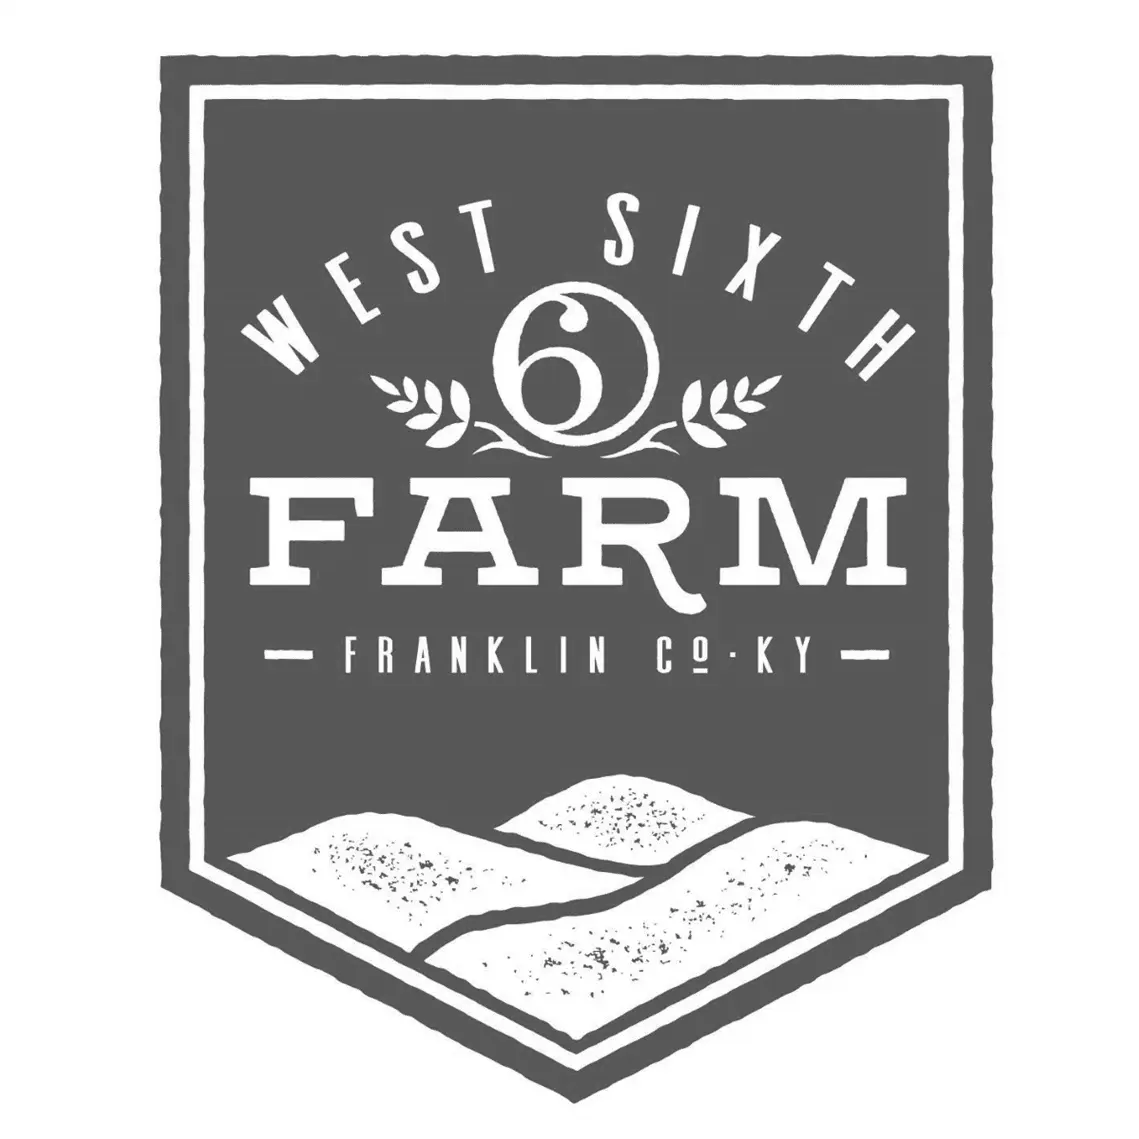 West 6th Farm